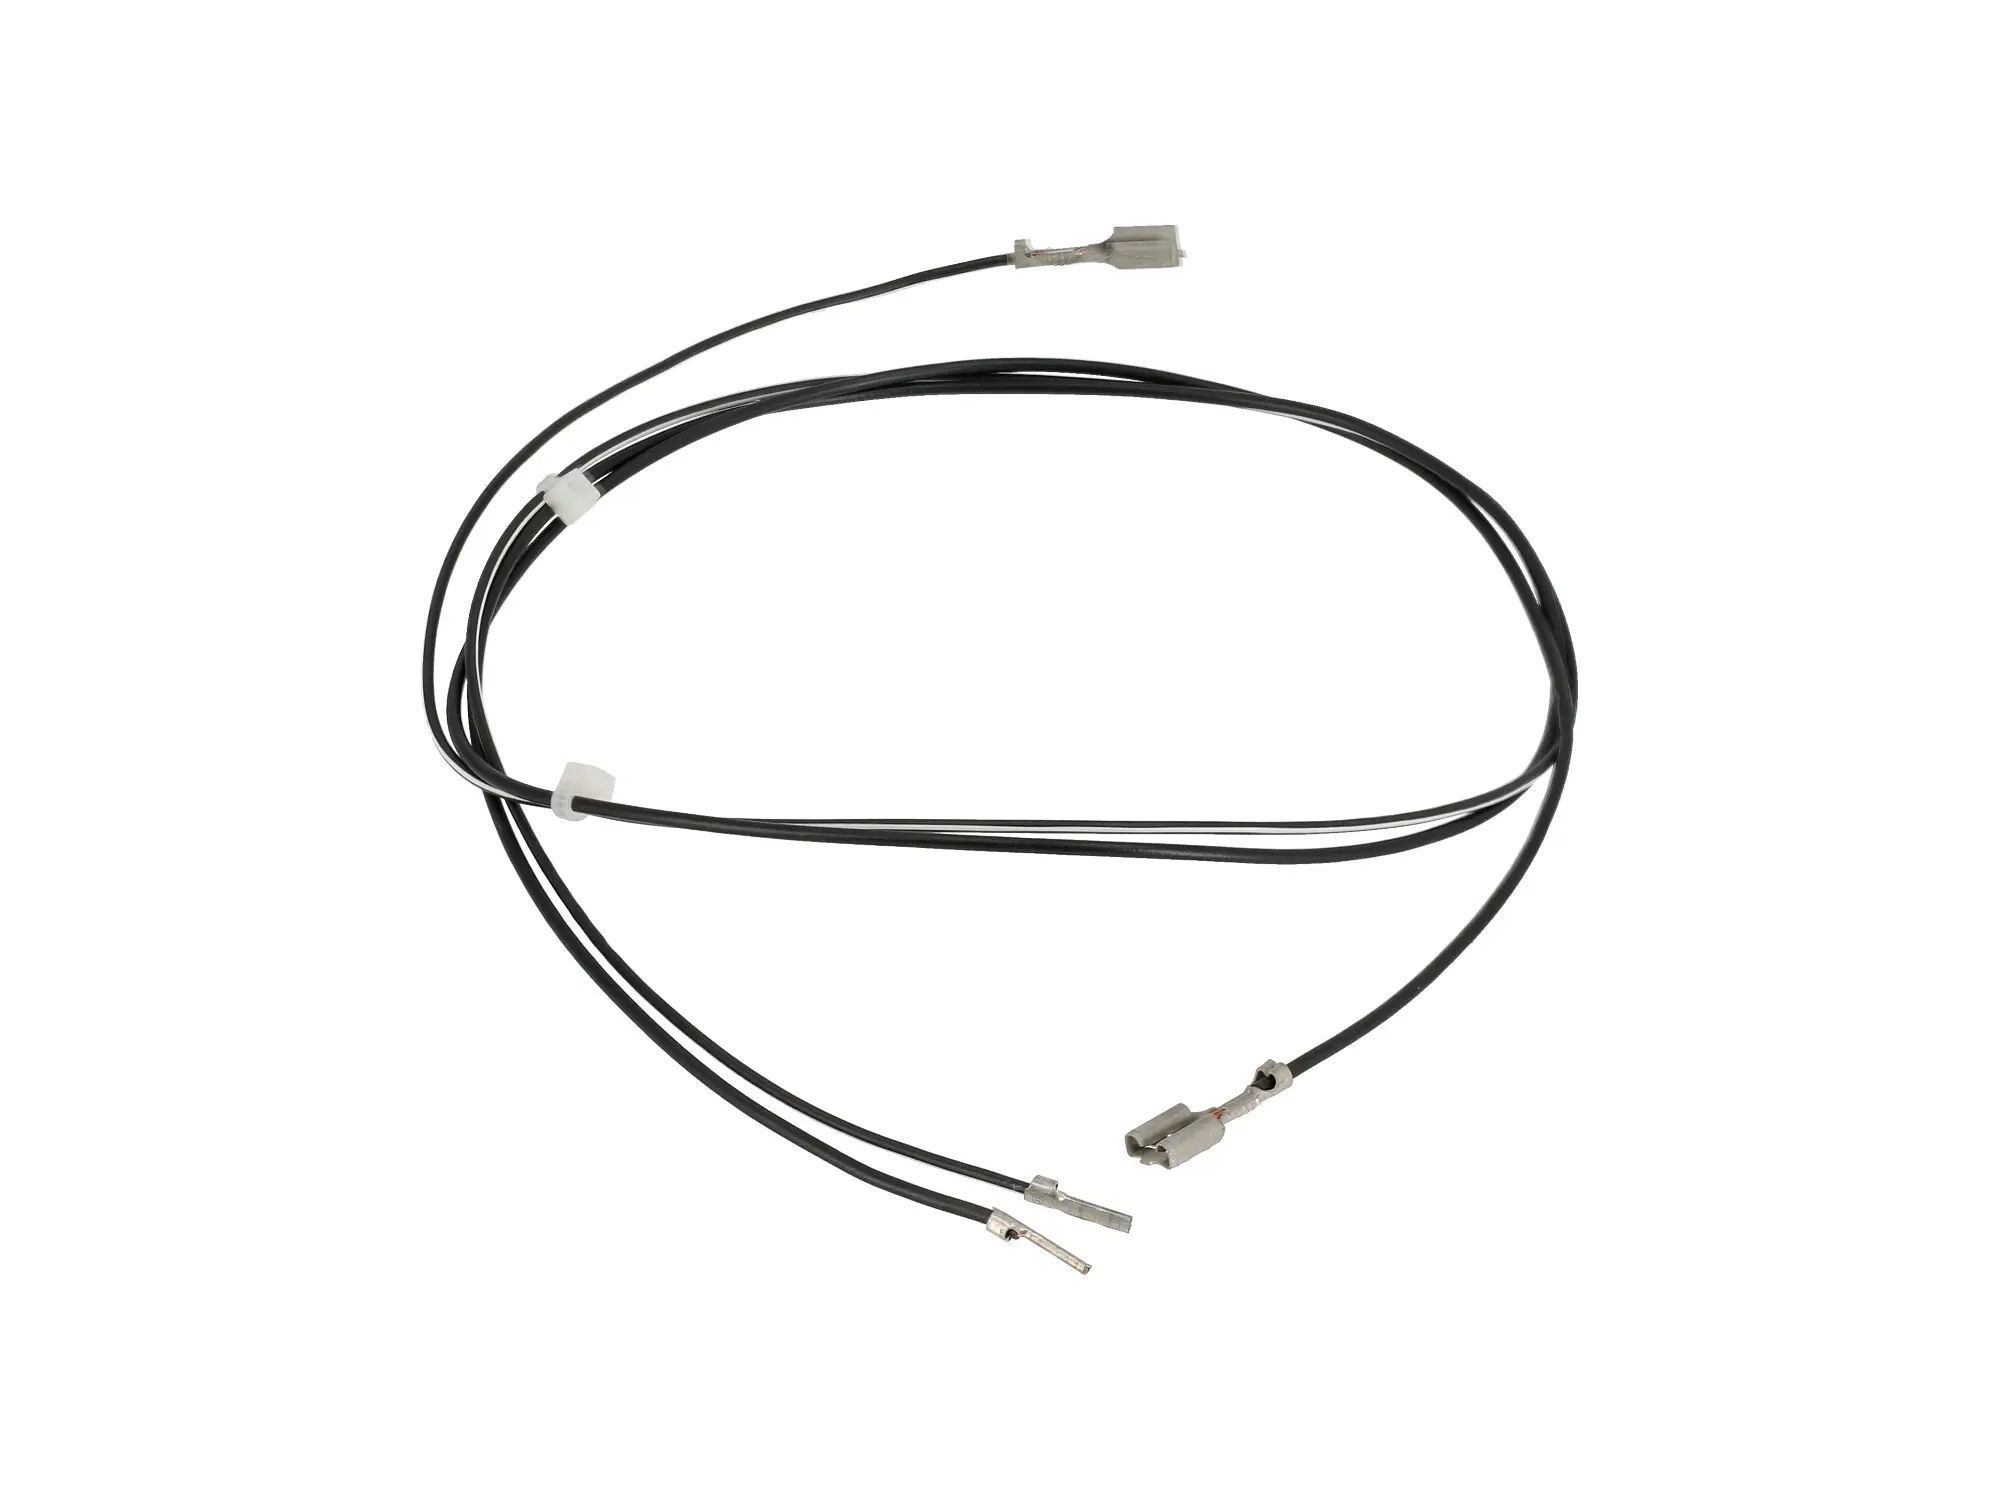 Kabel f. Blinkleuchte, vorn links - SR50B, C, CE, SR80 CE, Art.-Nr.: 10065125 - Bild 1